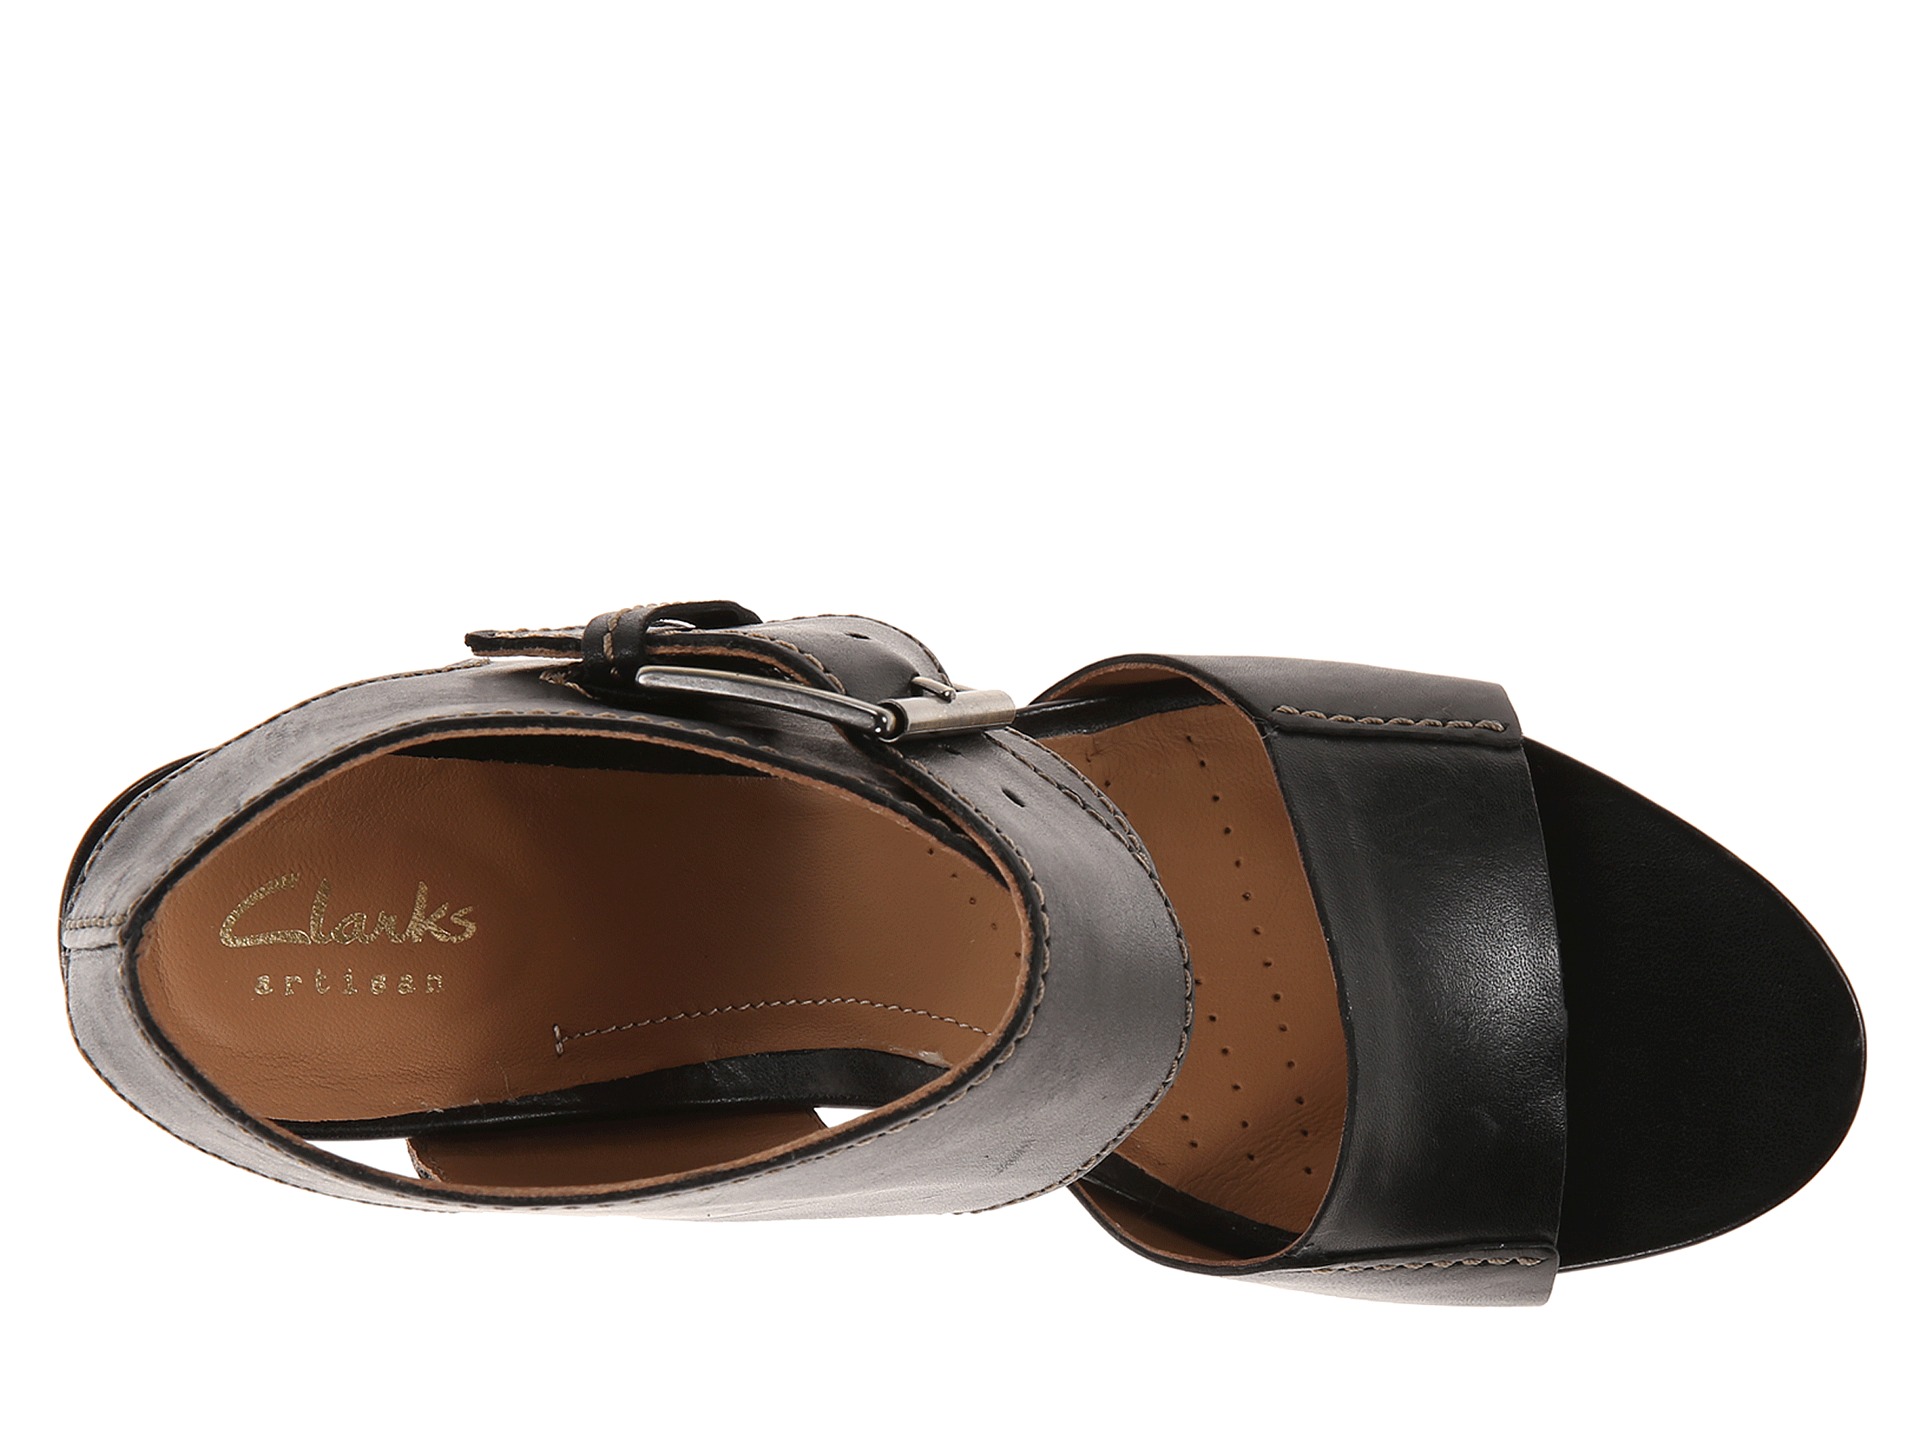 zappos clarks sandals